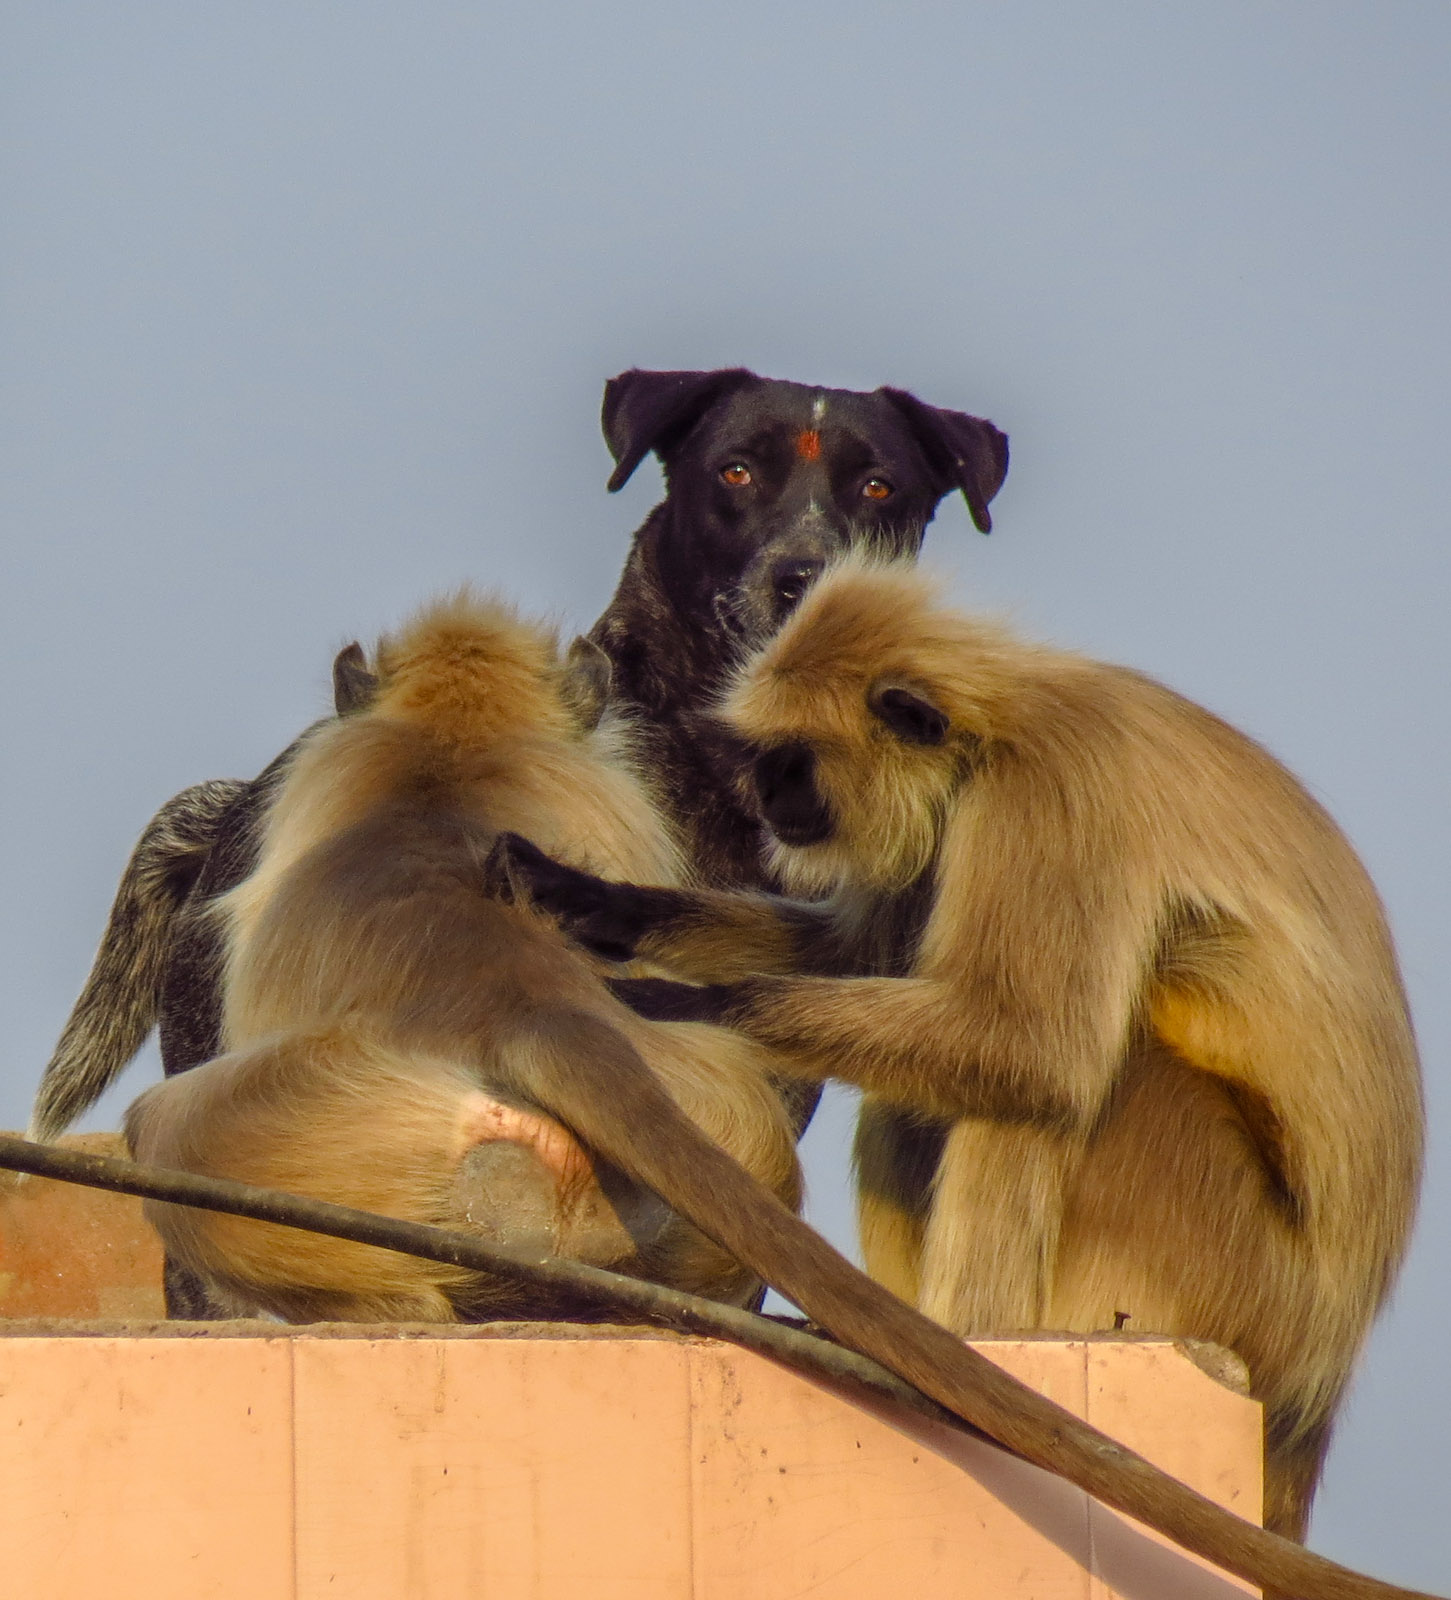 pushkar-monkey-and-dog